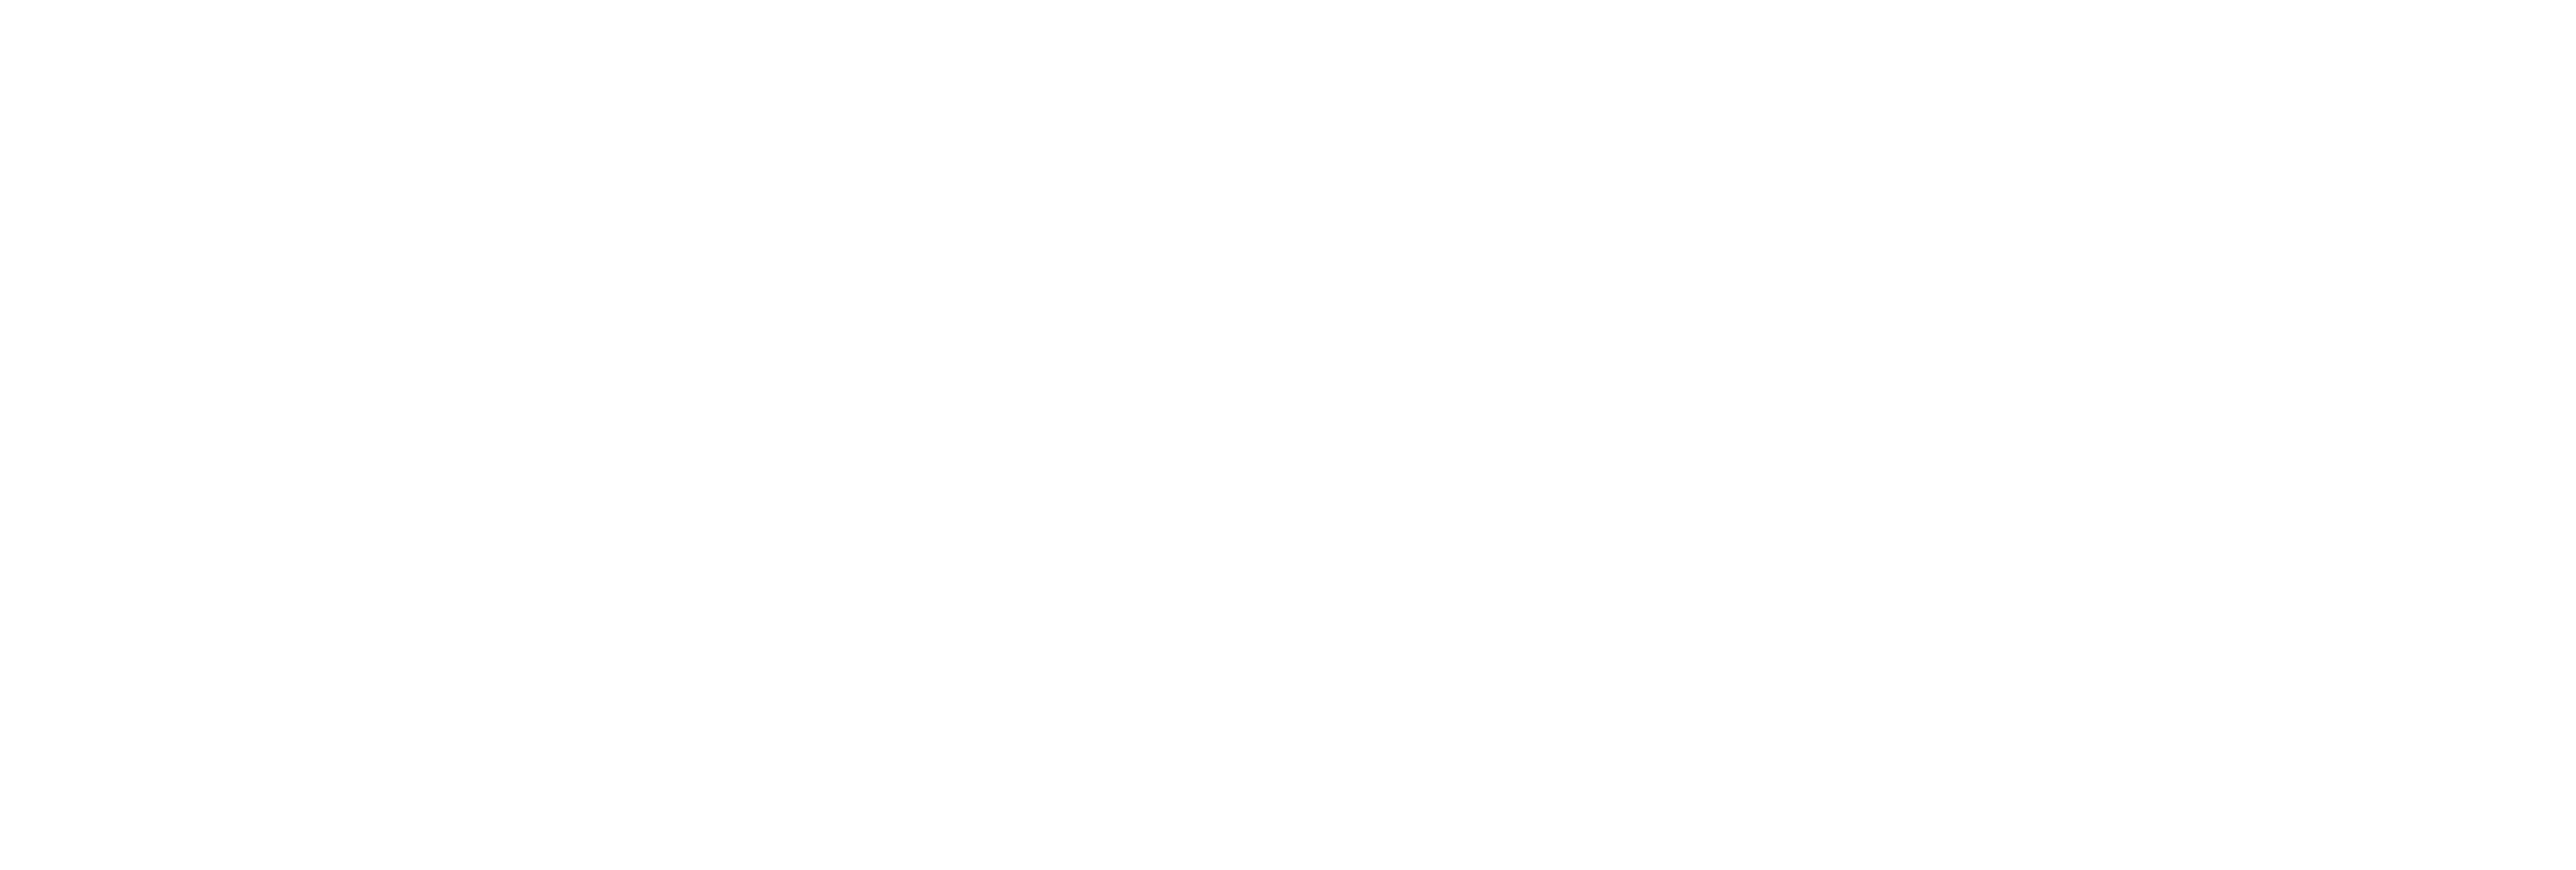 http://www.neuroclinicpanama.com/